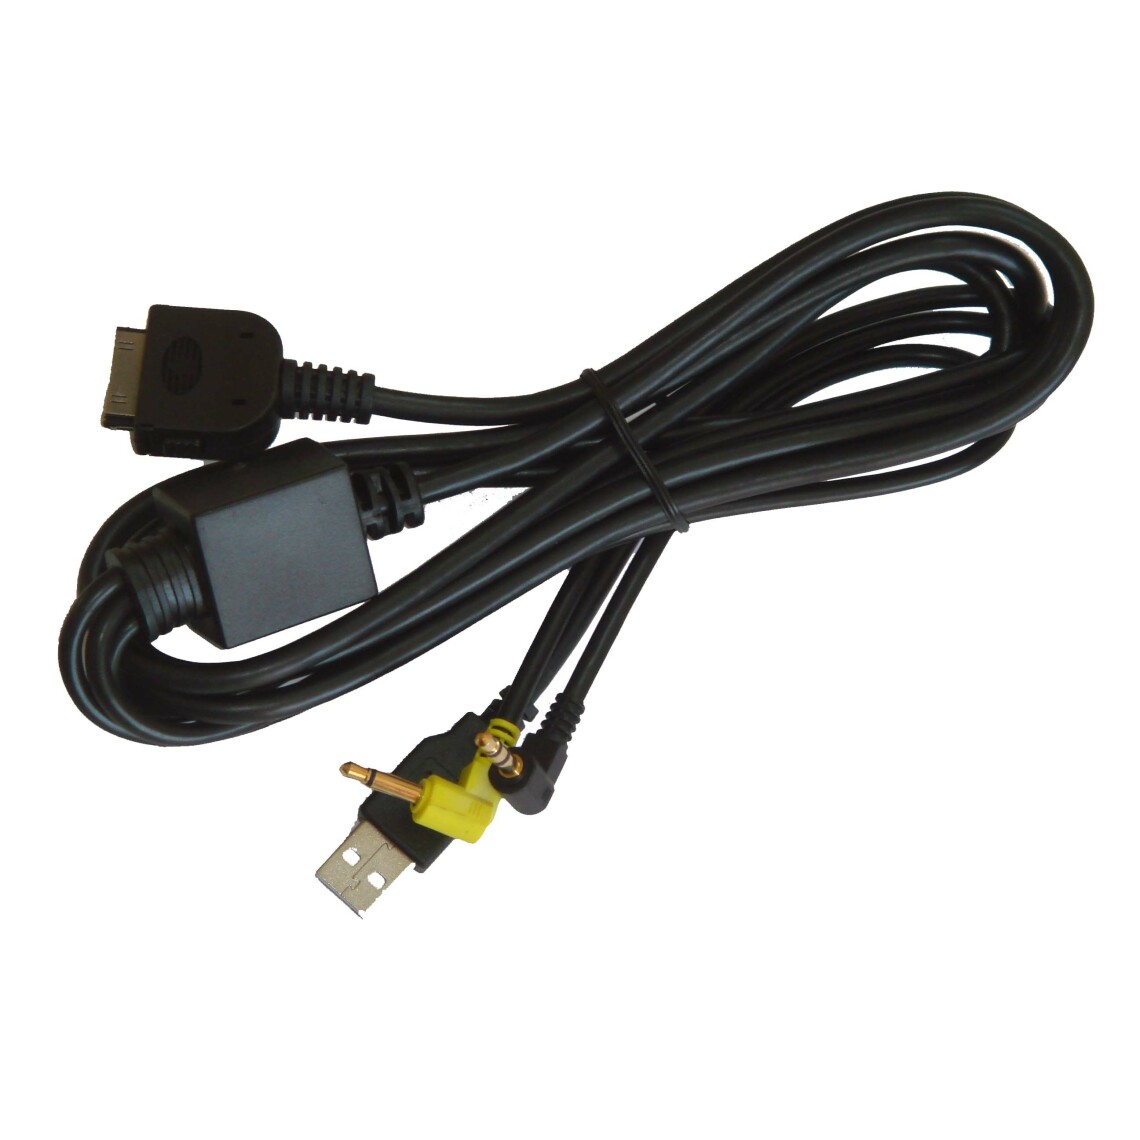 Vhbw - vhbw Câble adaptateur de ligne AUX Radio compatible avec Kenwood DNX5240, DNX5240BT, DNX7100, DNX710EX, DNX7120, DNX7200 voiture - USB, prise jack - Alimentation modulaire